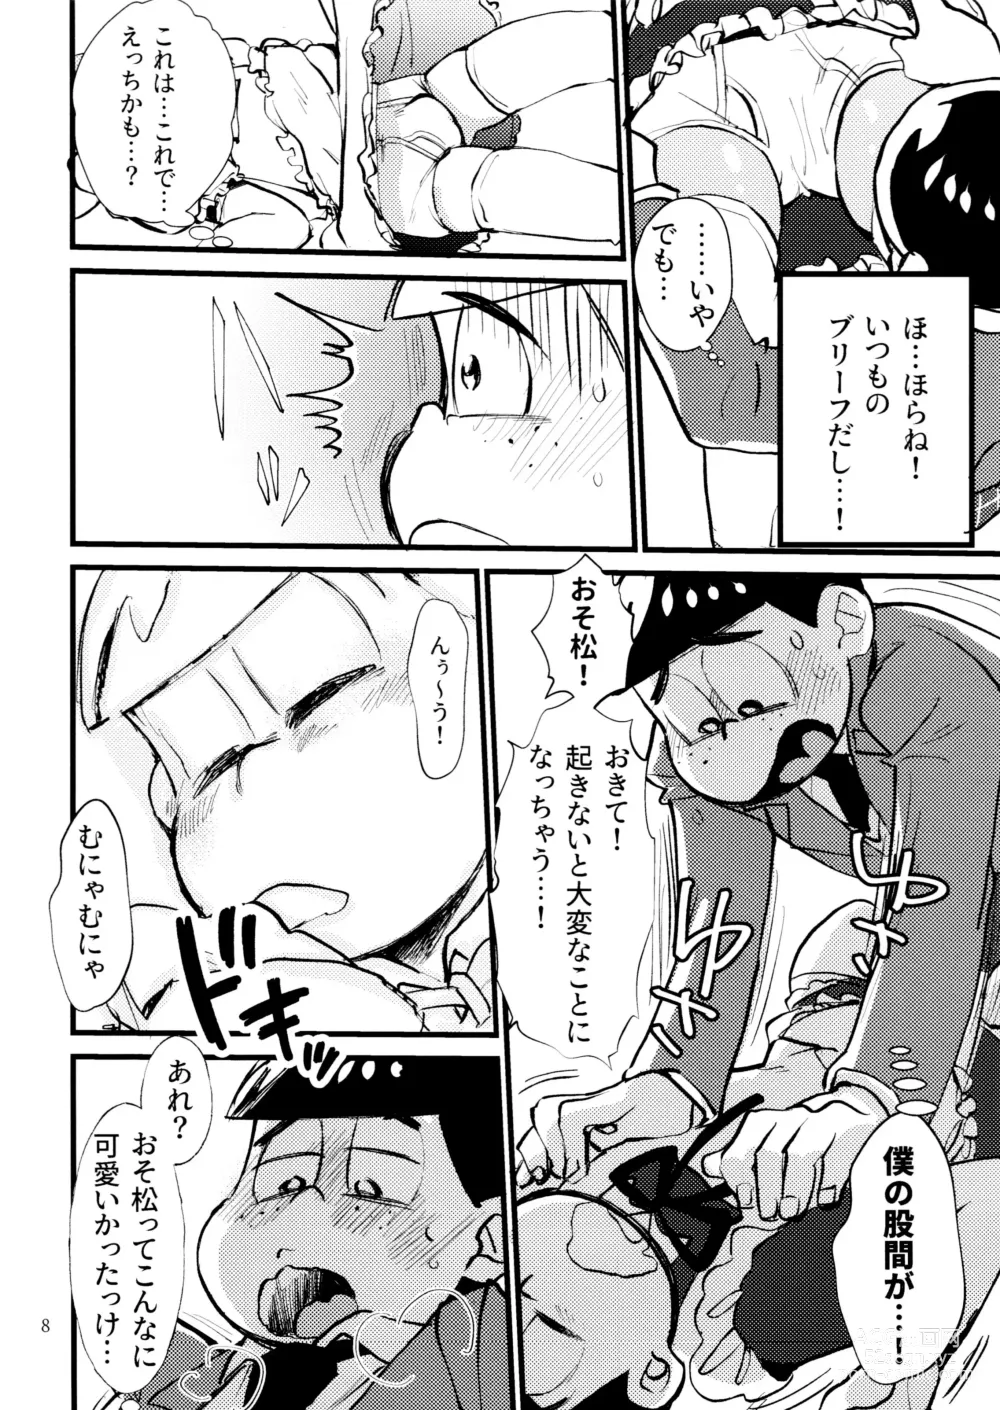 Page 8 of doujinshi Boku no Ecchi na Onii-chan